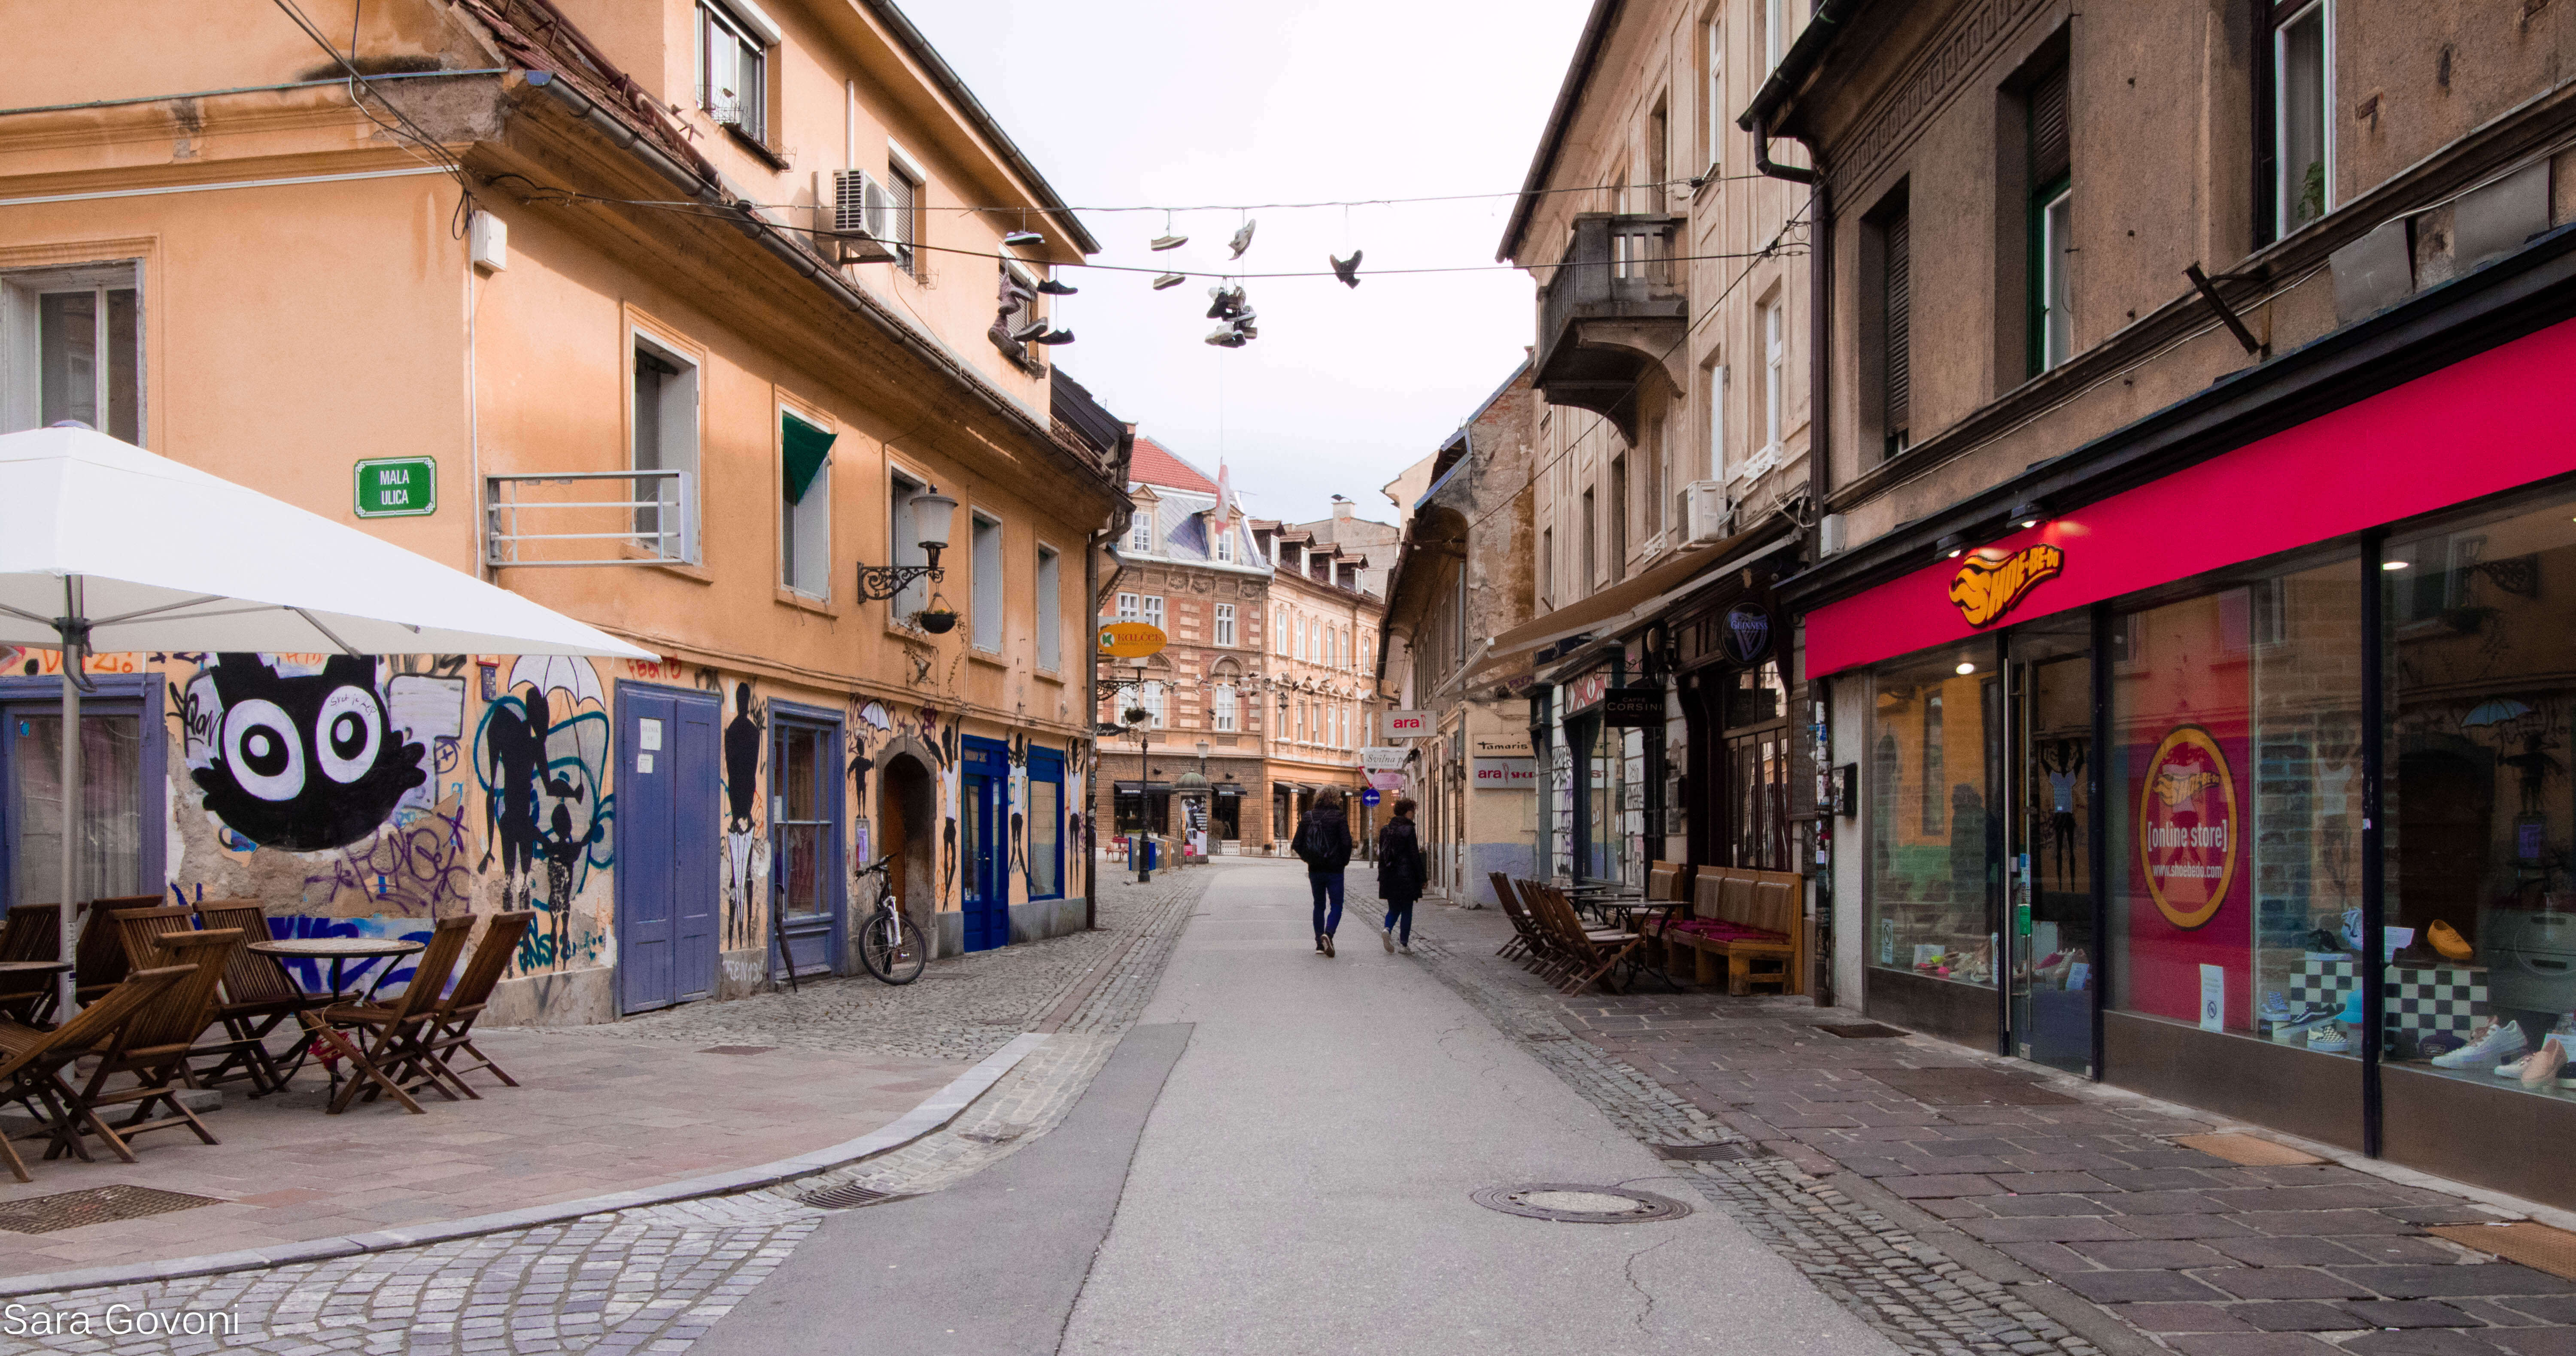 Cosa vedere a Lubiana in un giorno: via con scarpe appese ai fili, negozi e vetrine colorate